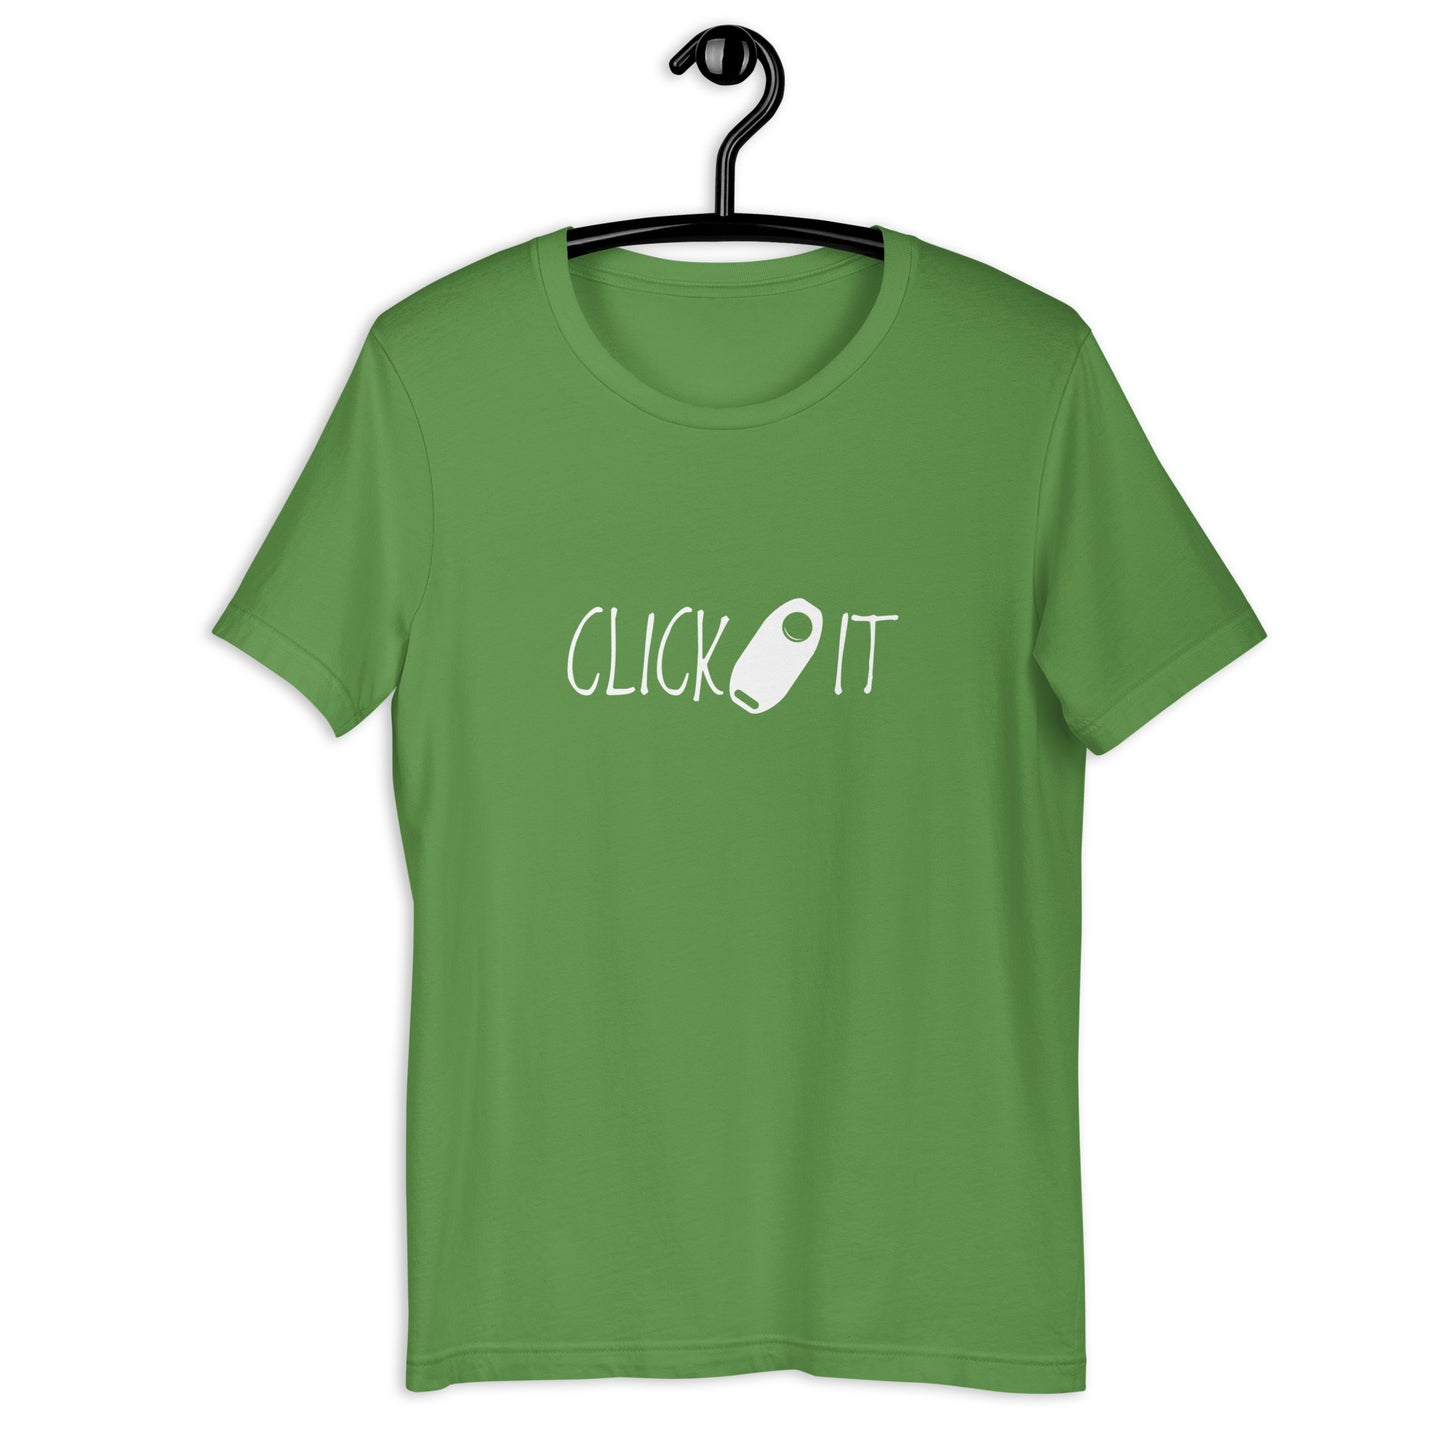 CLICK IT - Unisex t-shirt